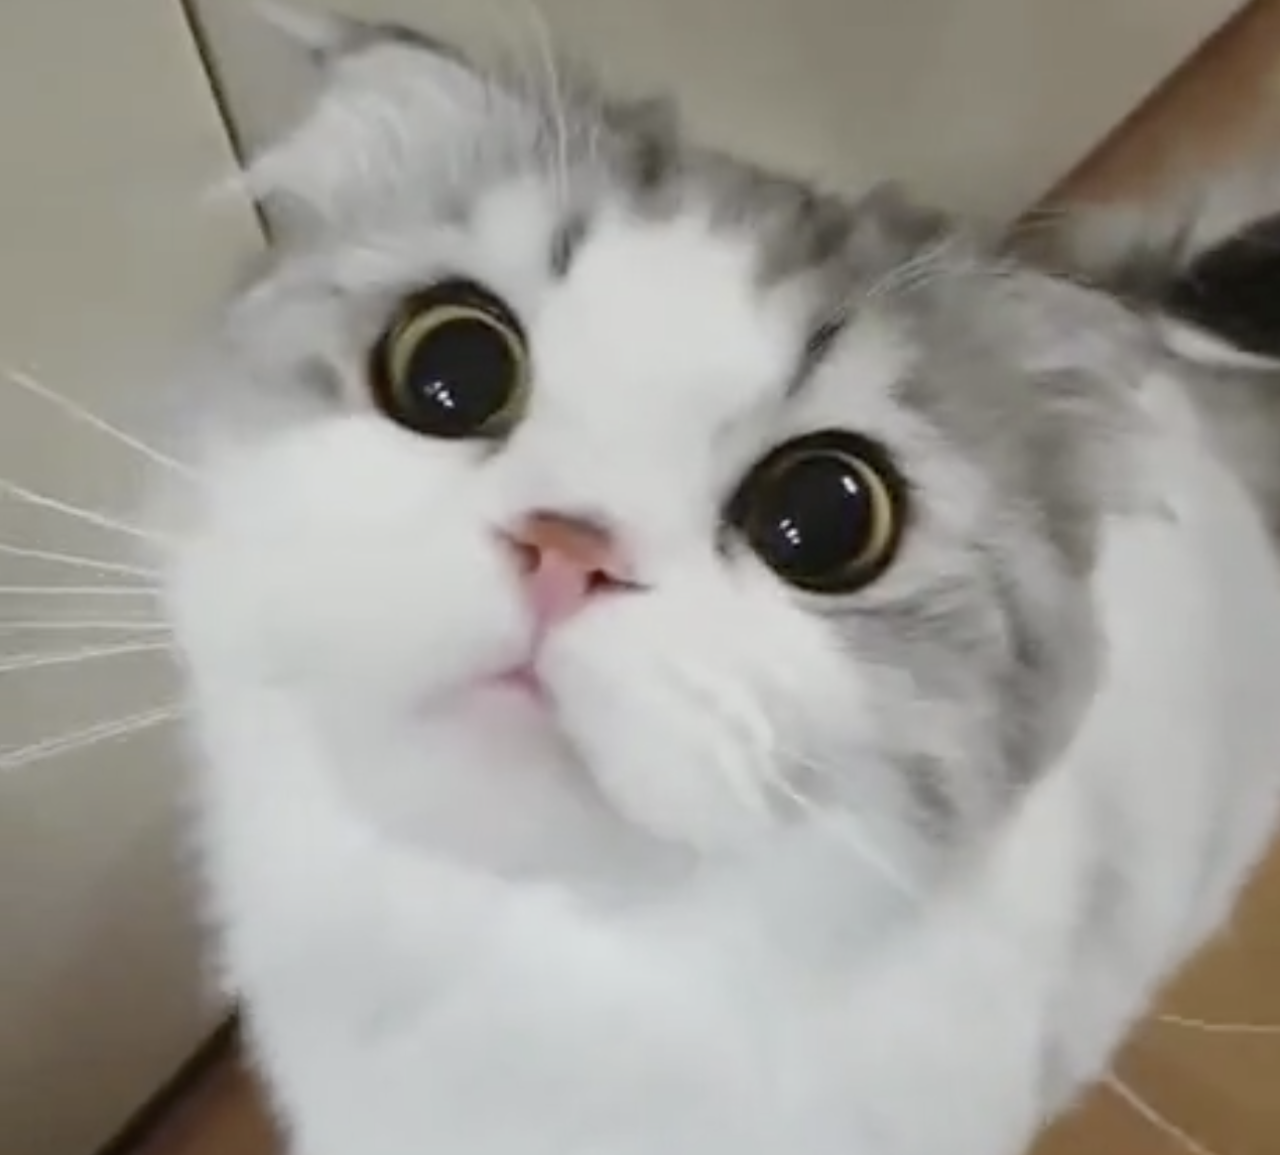 https://catschef.com/adorable-kitten-dealing-with-hiccups-hooman-help-me/